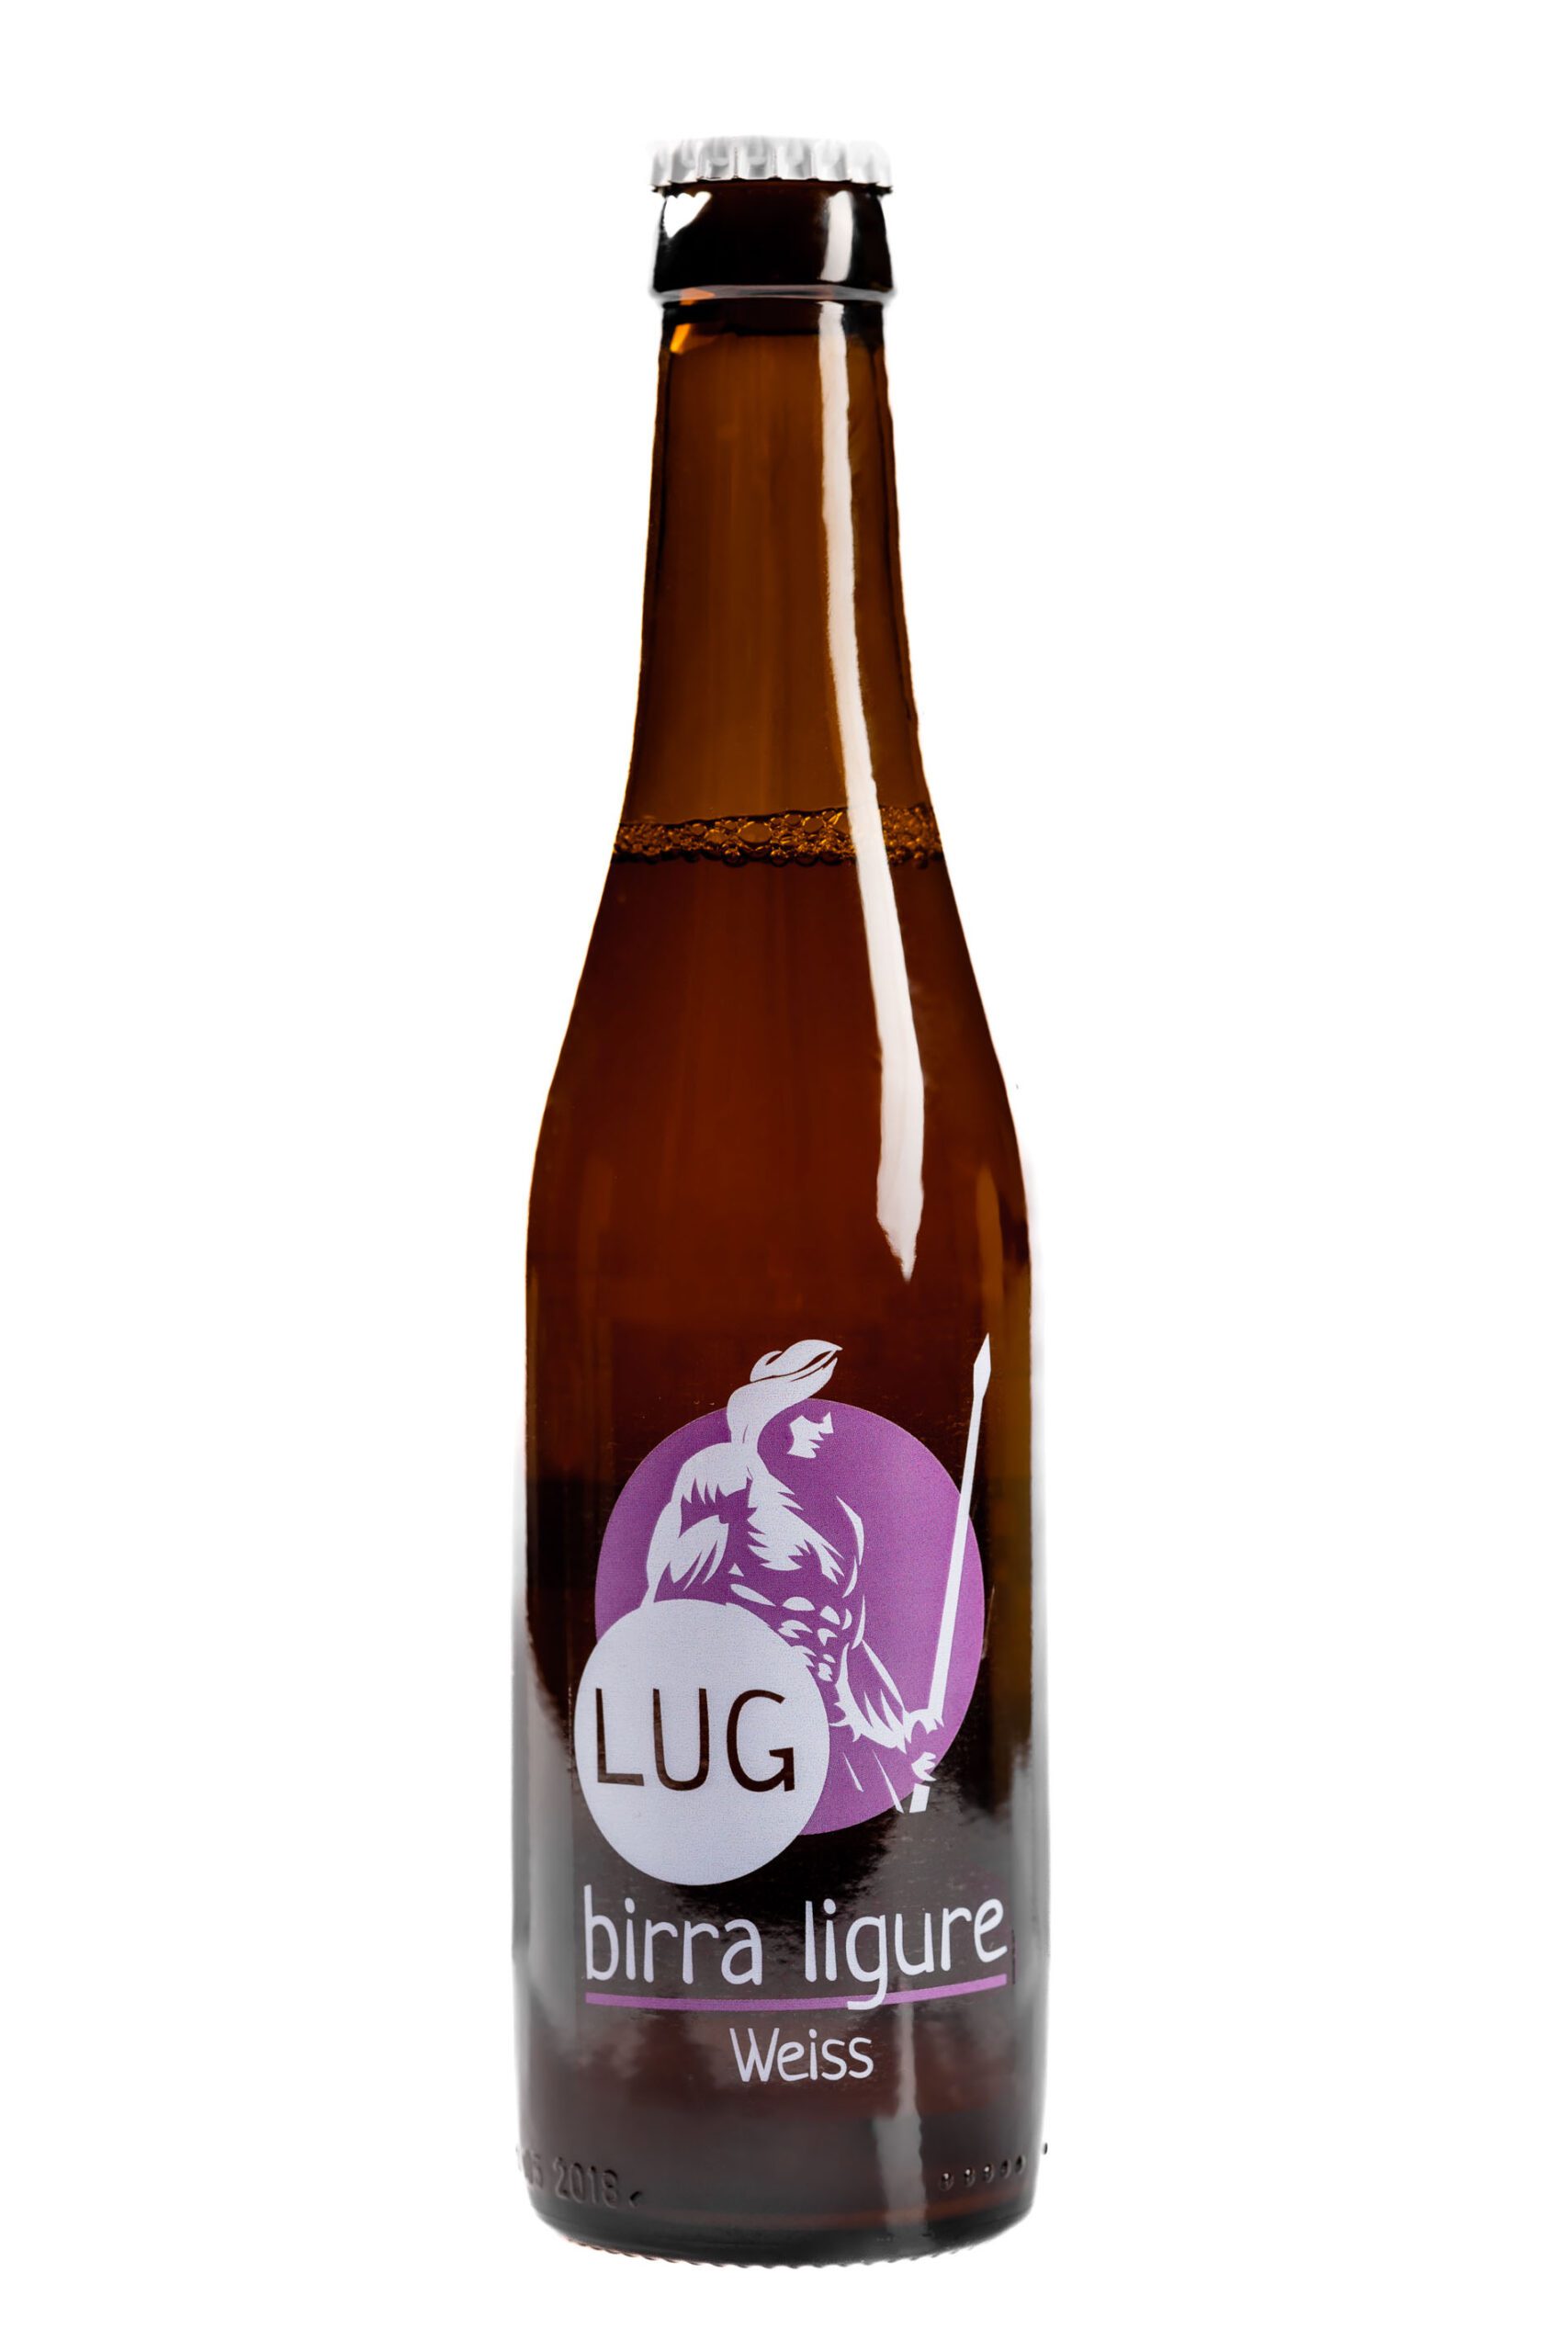 lug-birra-ligure-33-2